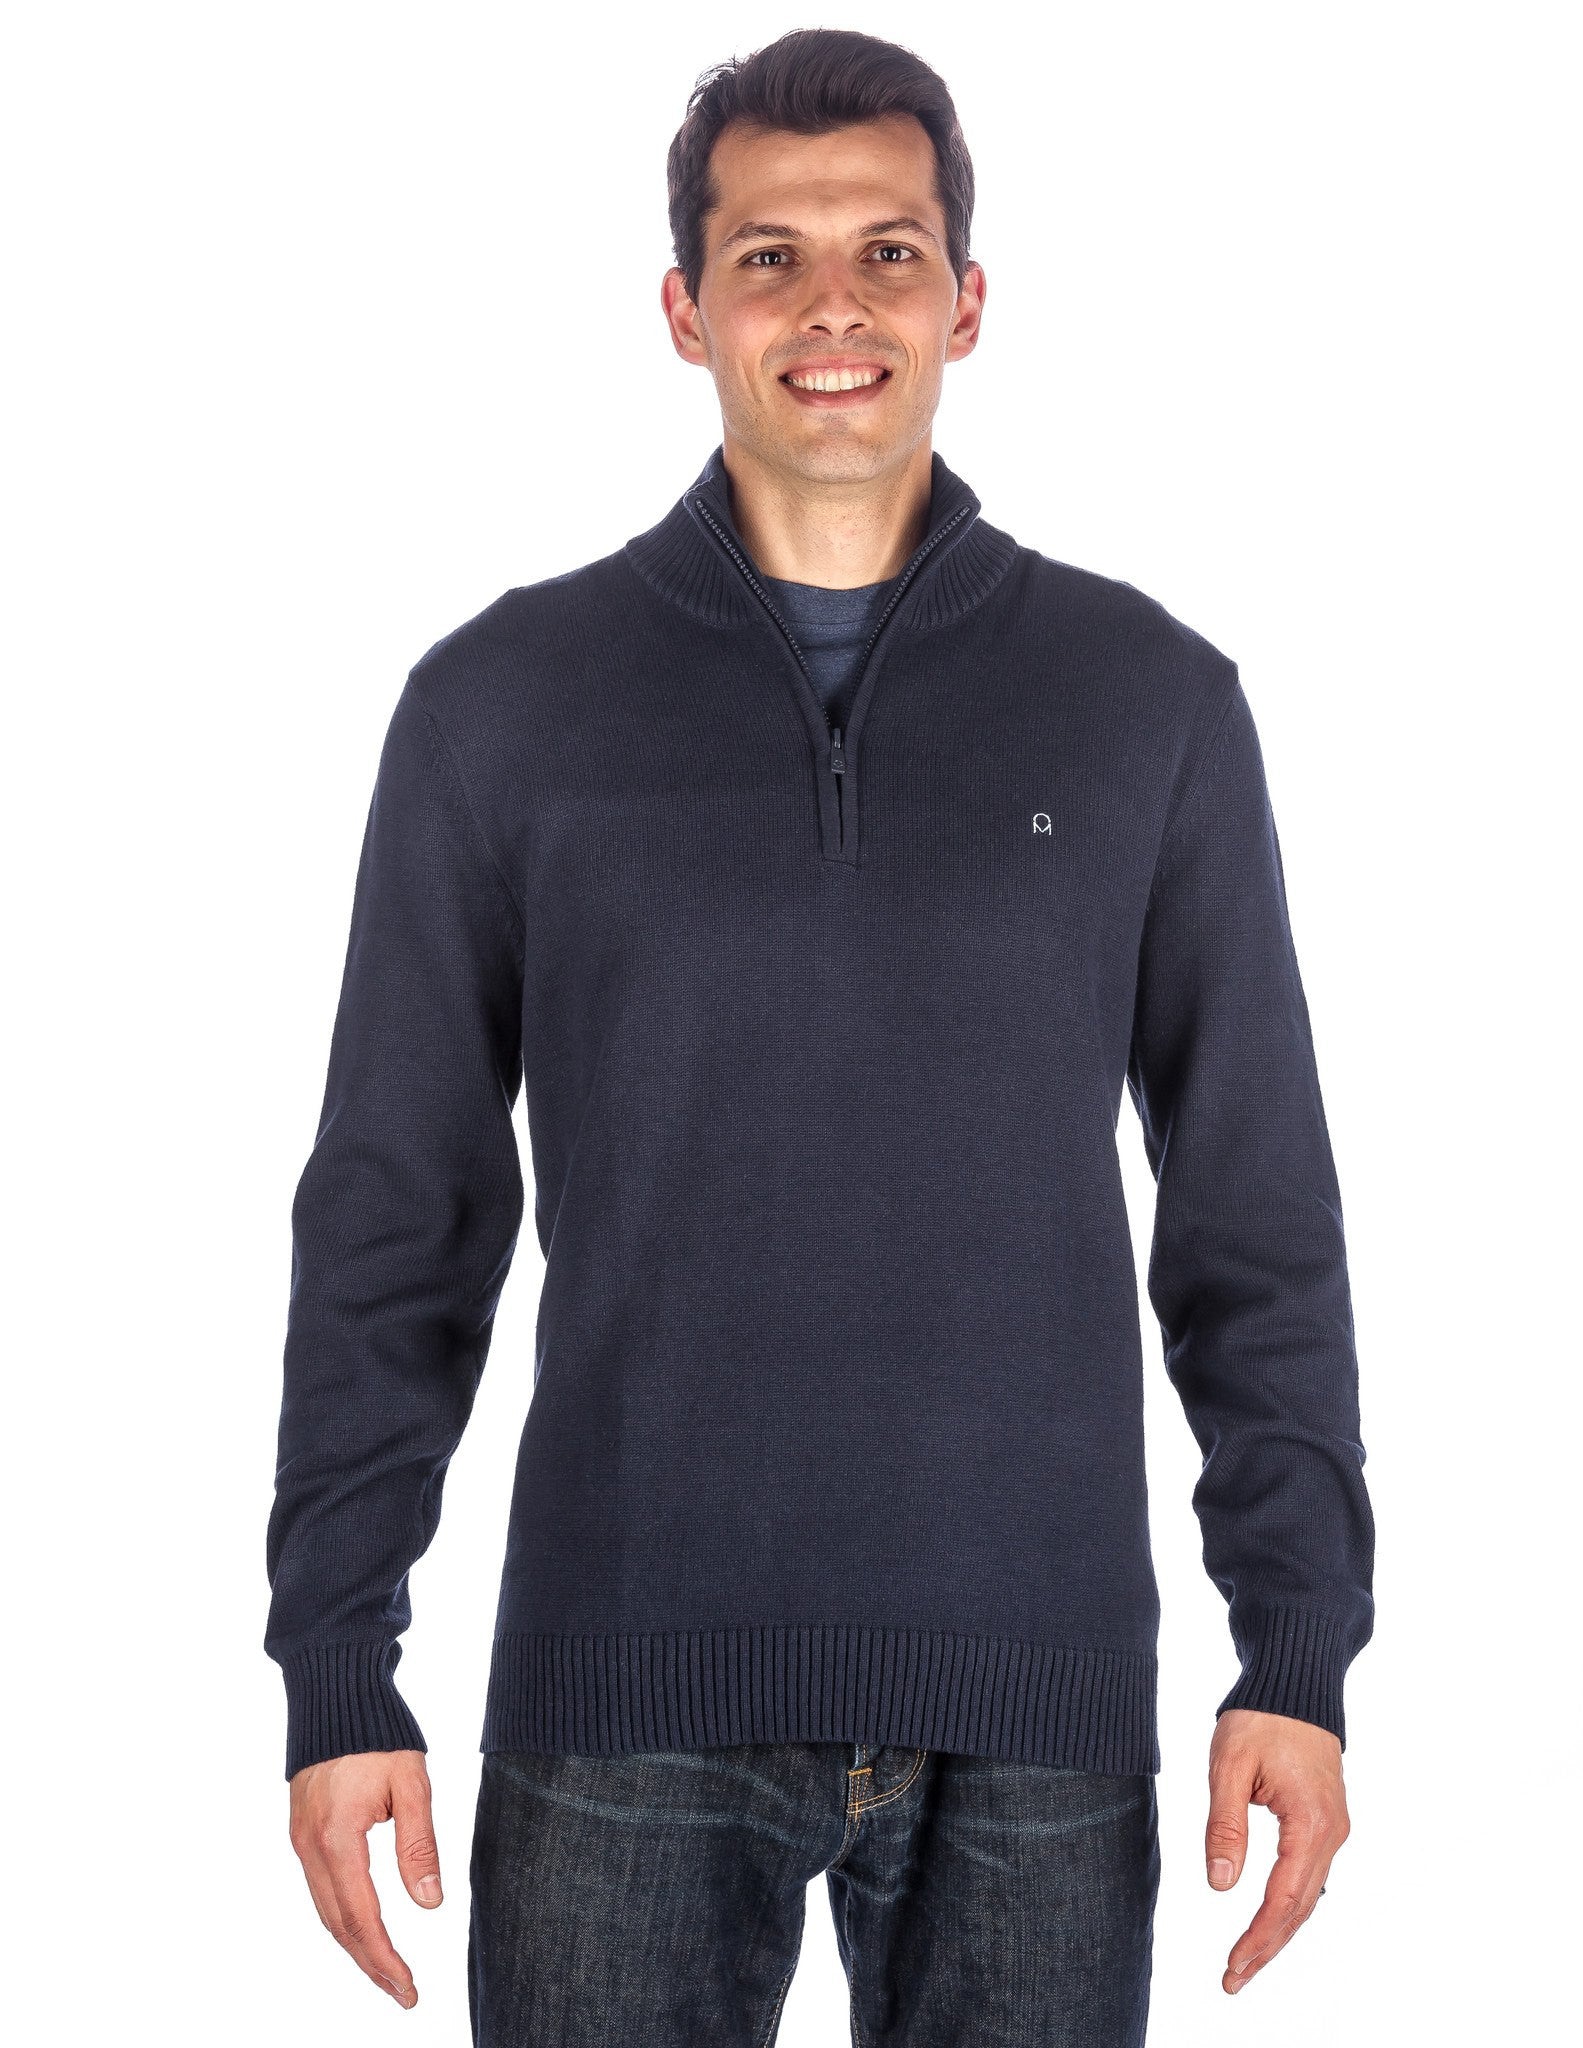 Noble Mount Men\'s 100% Cotton Half-Zip Pullover Sweater